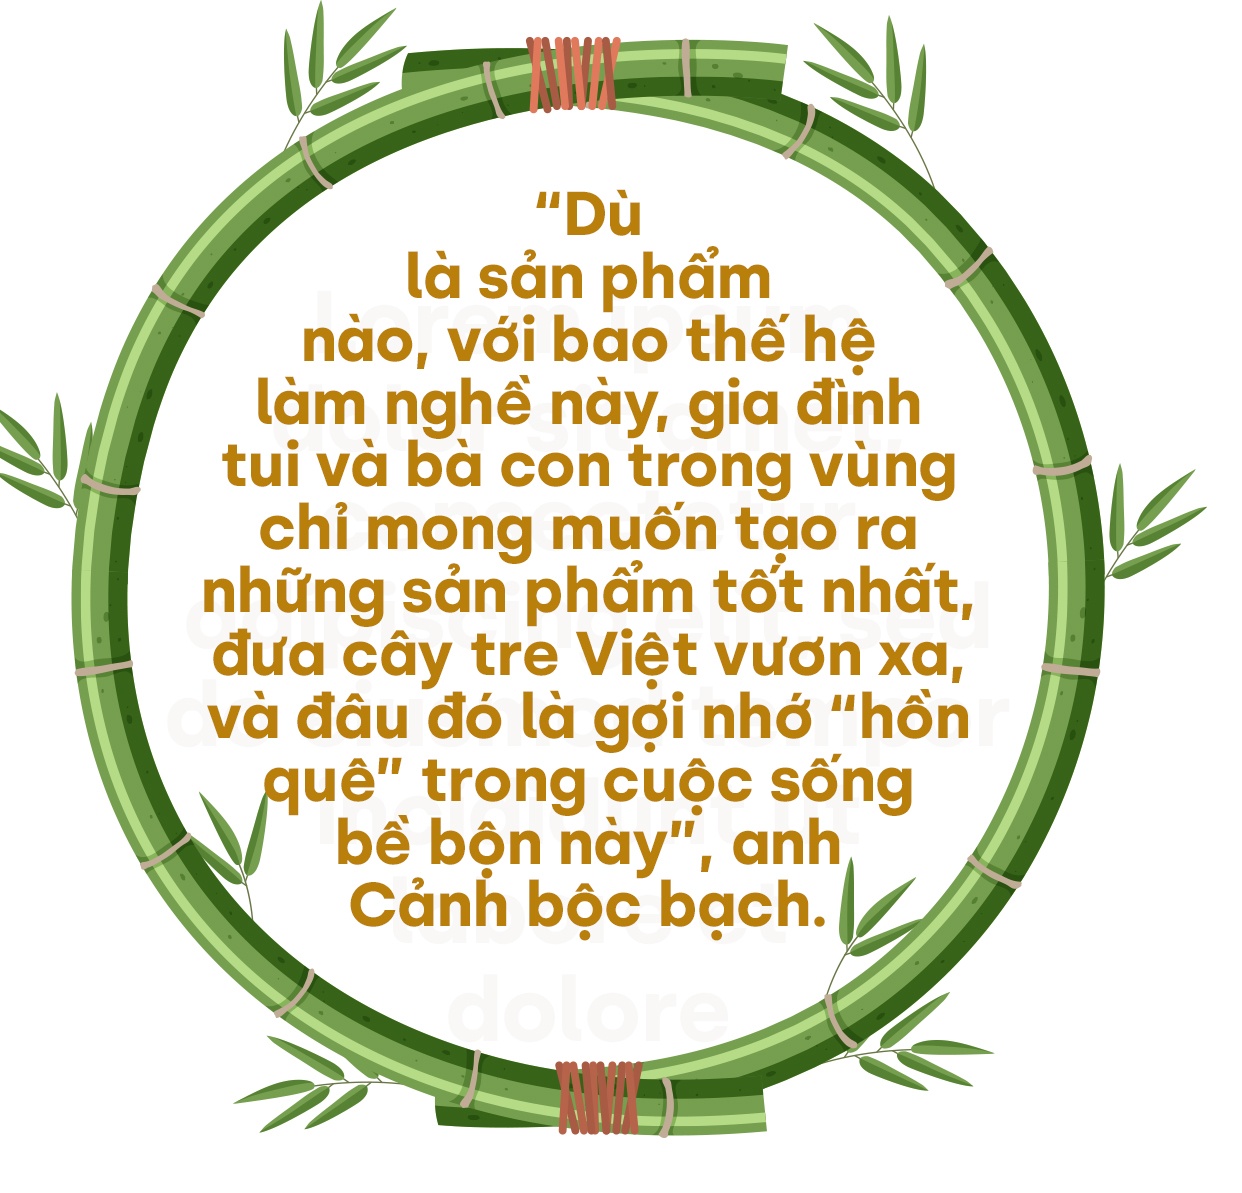 Giữ “hồn quê” cho cây tre Việt